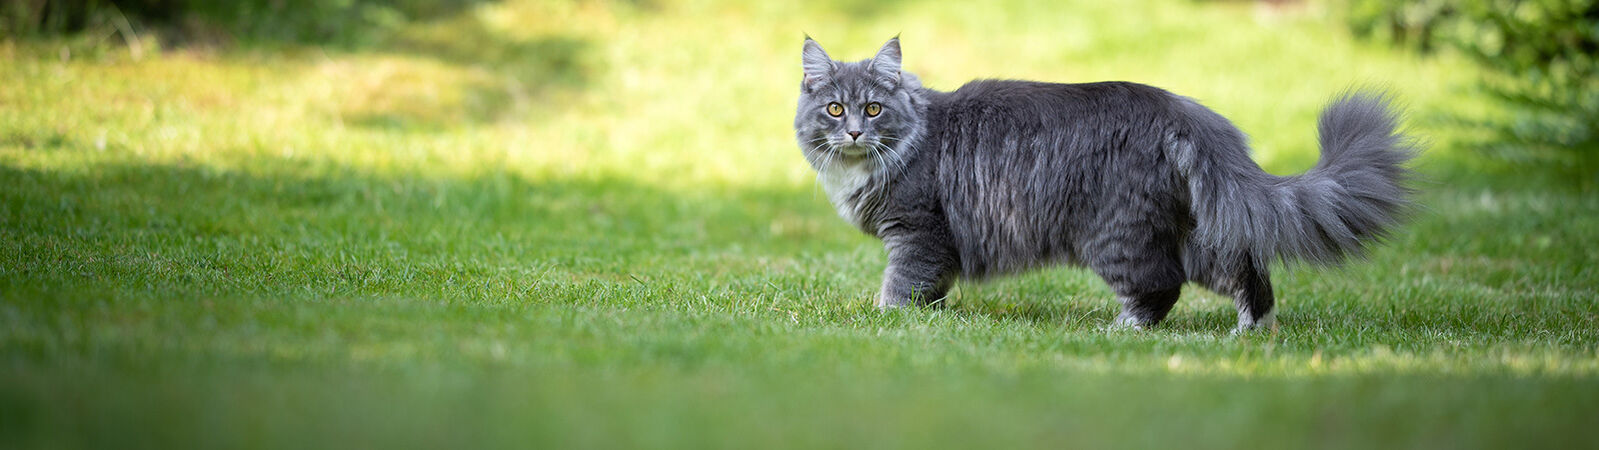 Eine graue langhaarige Katze läuft über Rasen.